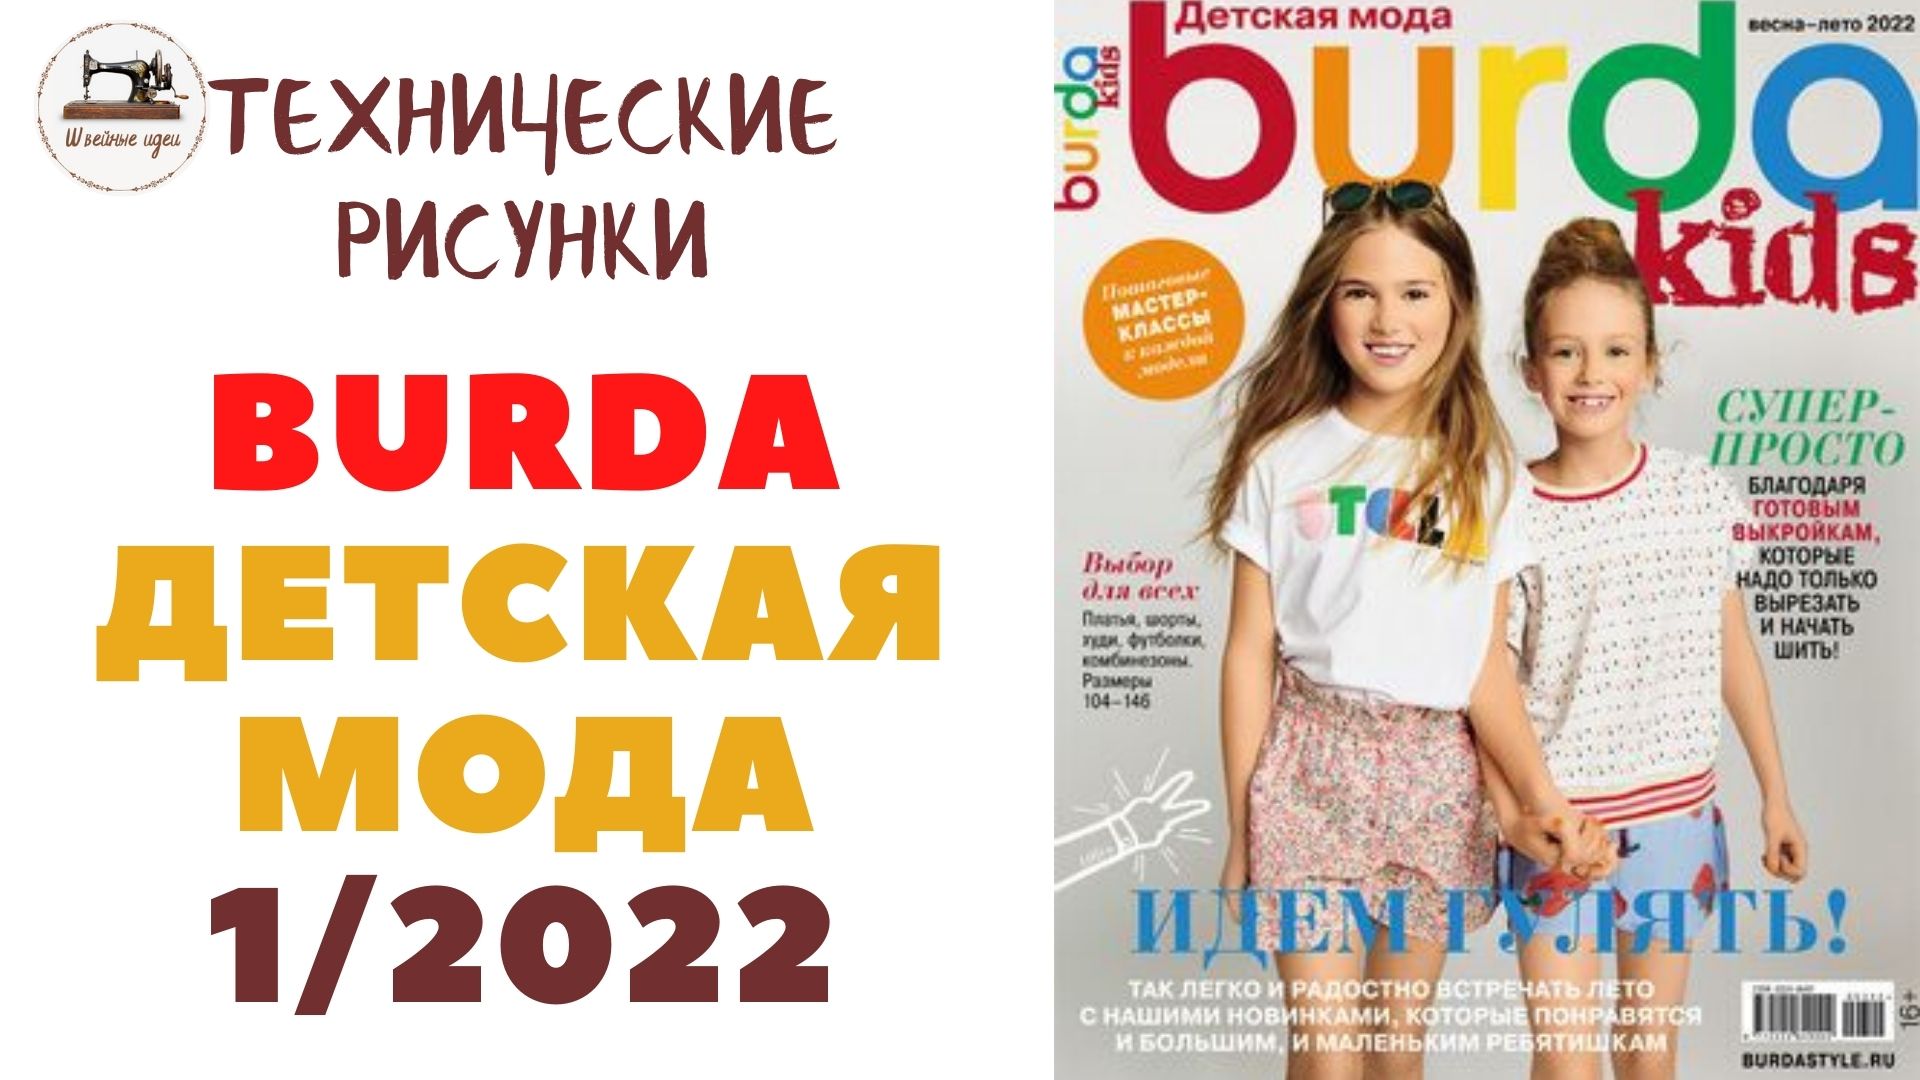 Burda Kids 1/ 2022. Детская мода. ТЕХНИЧЕСКИЕ РИСУНКИ